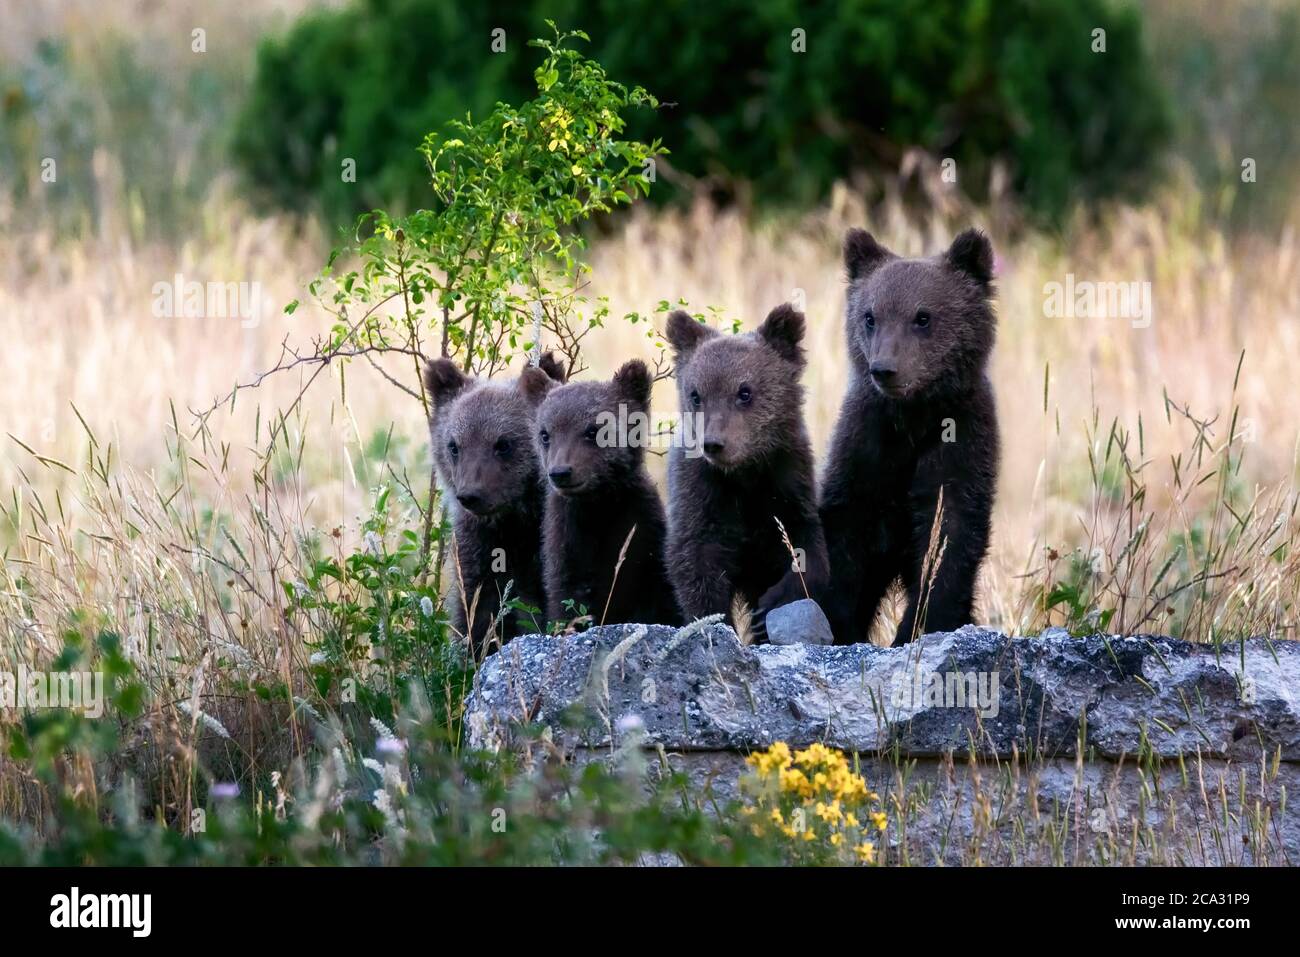 Bärenjungen aus Marsican, eine geschützte Art, die typisch für Mittelitalien ist. Tiere in freier Wildbahn in ihrem natürlichen Lebensraum, in der Abruzzen Region in Italien. Stockfoto